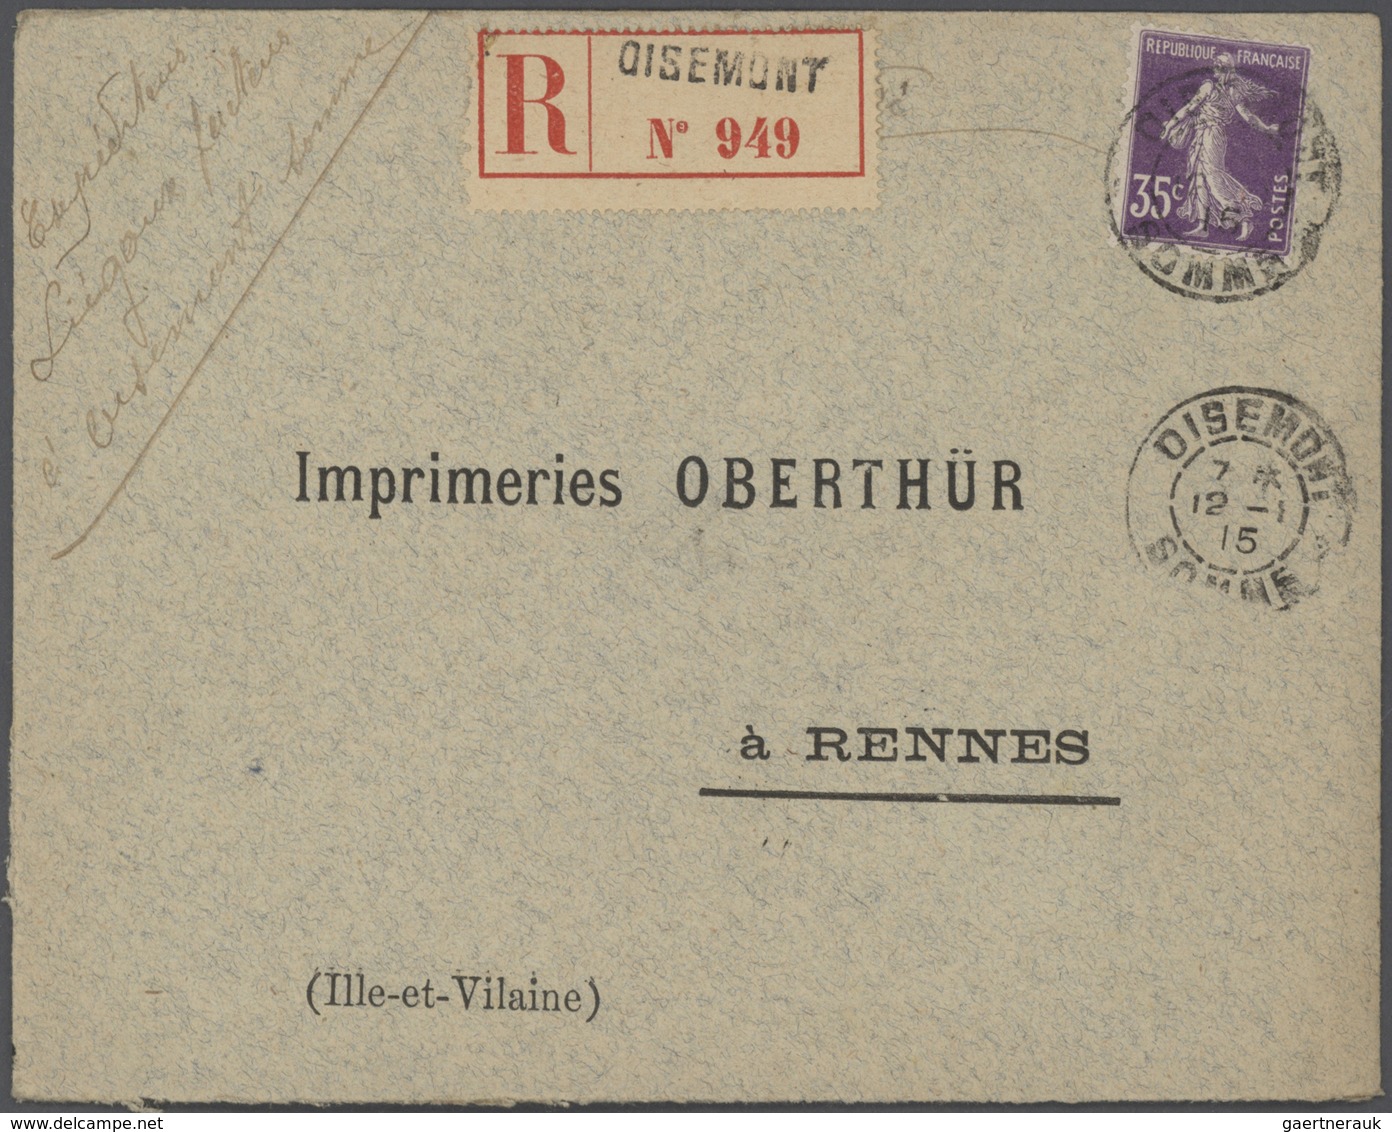 Frankreich: 1910/50 (ca.), Sammlung von ca. 335 Einschreibe-Briefen, sehr spezialisiert mit vielen T